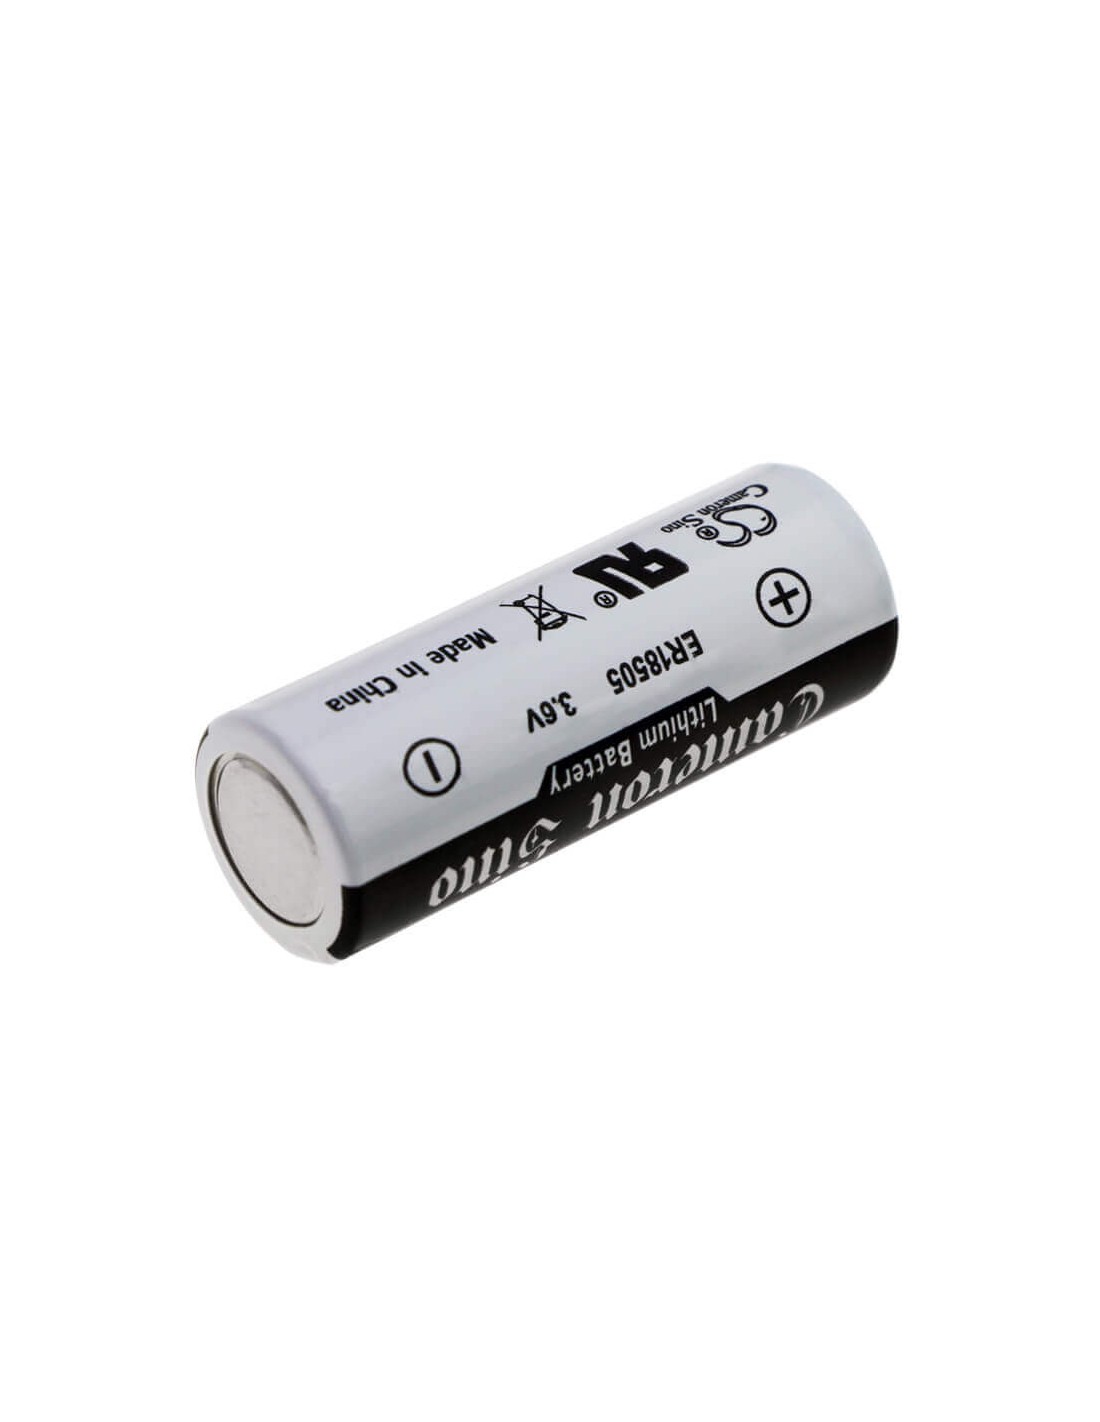 Generic LS17500, XL-100F, ER17/50, A Battery, Li-socl2, Voltage: 3.6v Capacity: 4ah